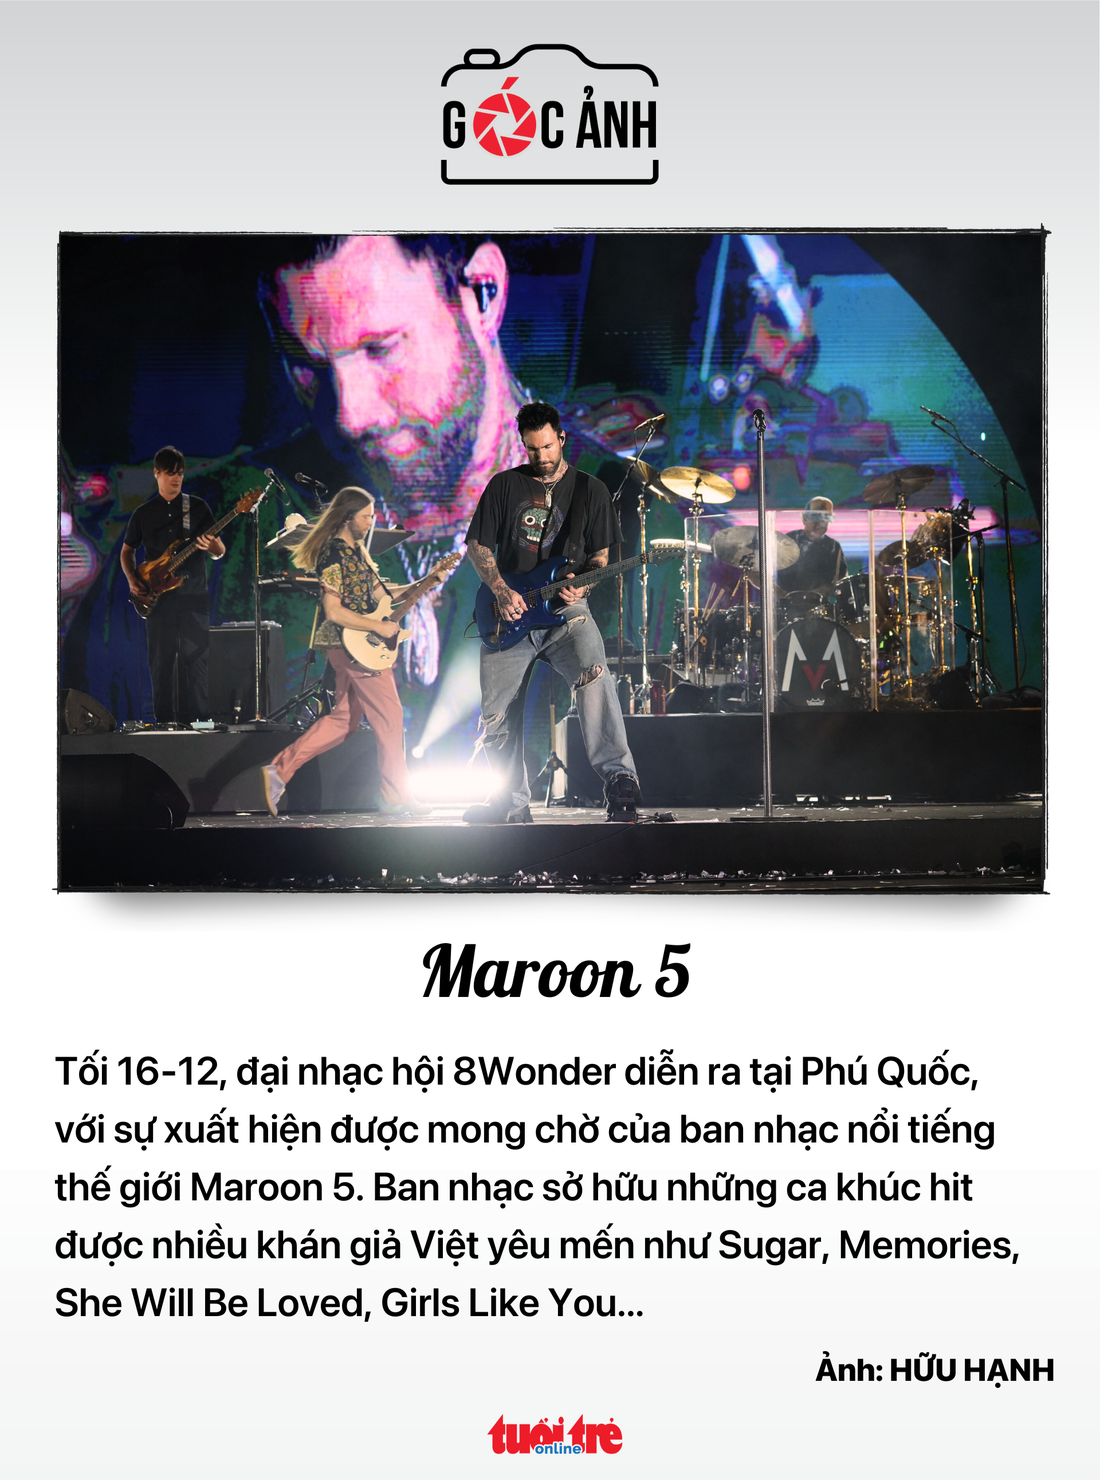 Maroon 5 biểu diễn ở Phú Quốc - Ảnh: HỮU HẠNH